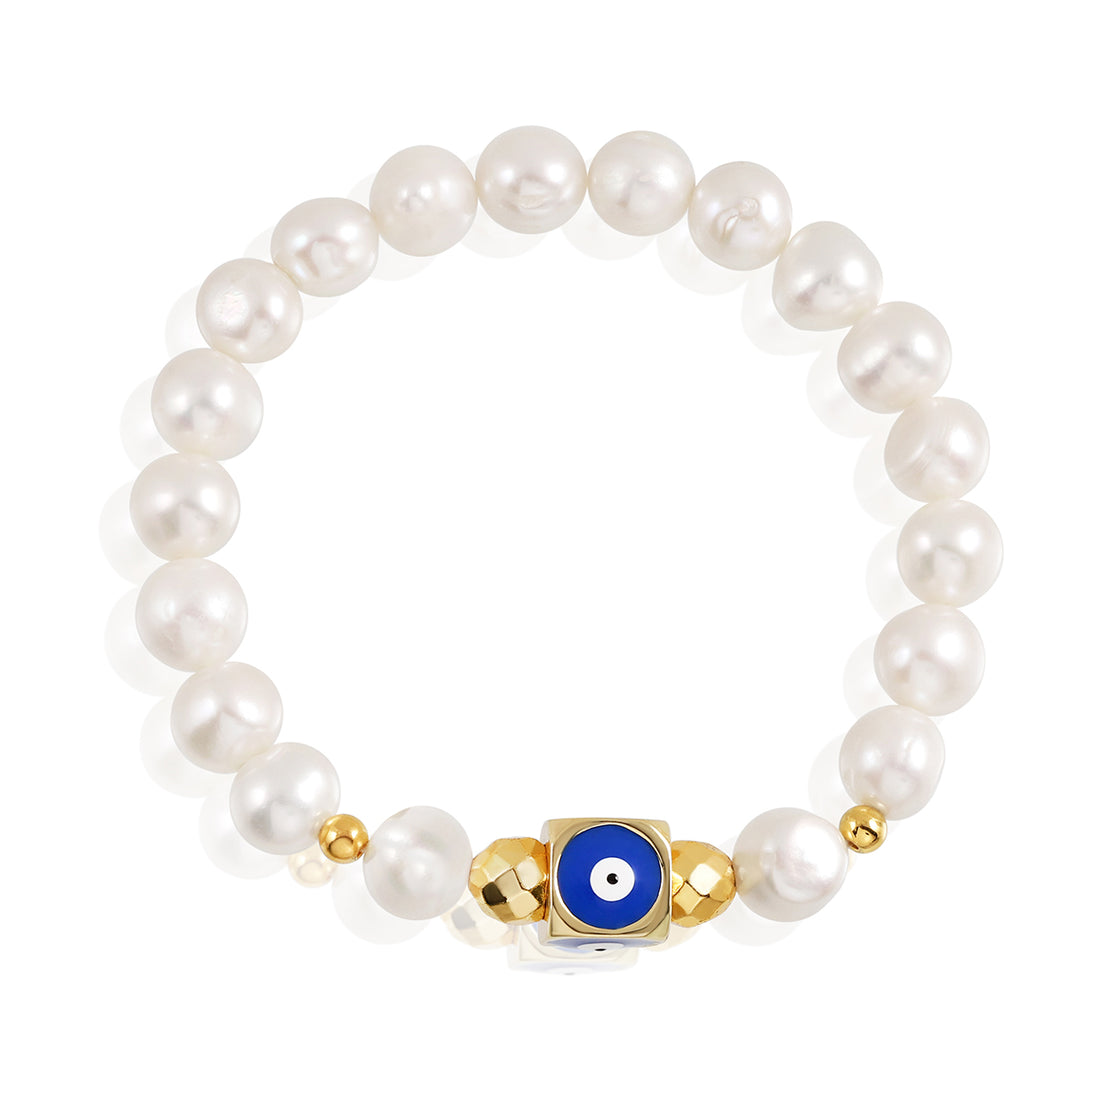 Pearl and Blue Evil Eye Charm Bracelet | Disha Inspired